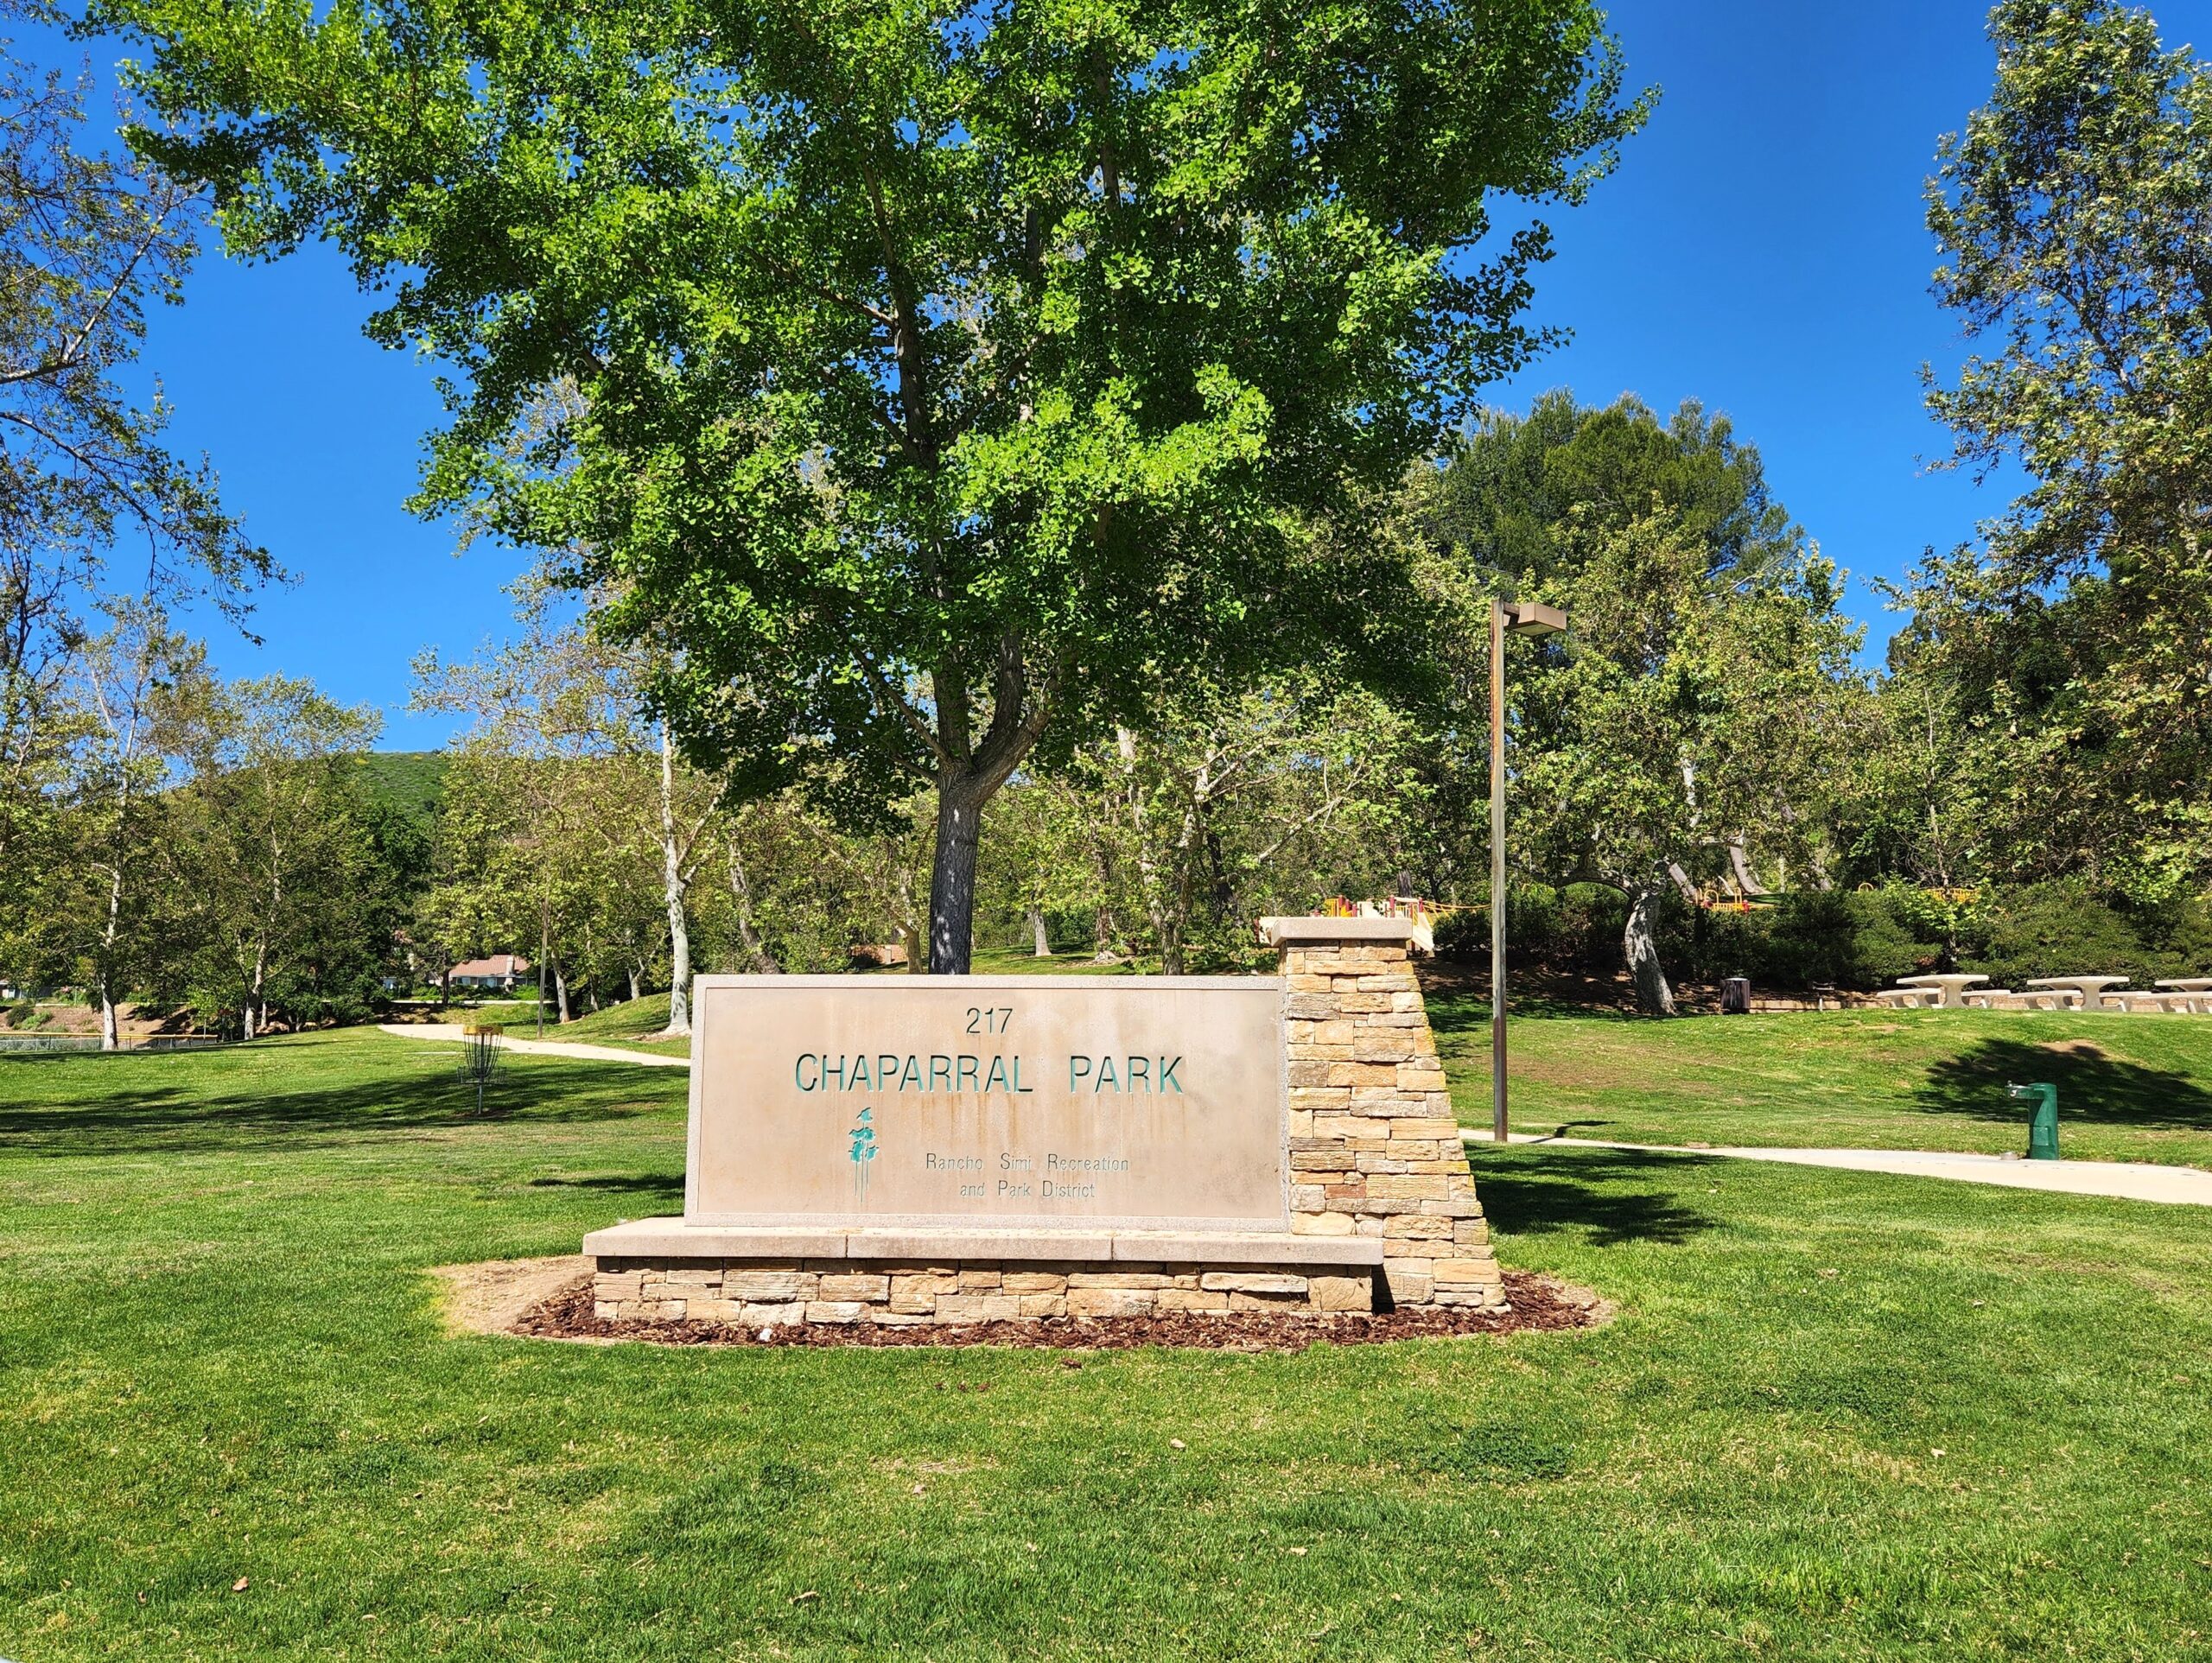 Chaparral Estates, Oak Park